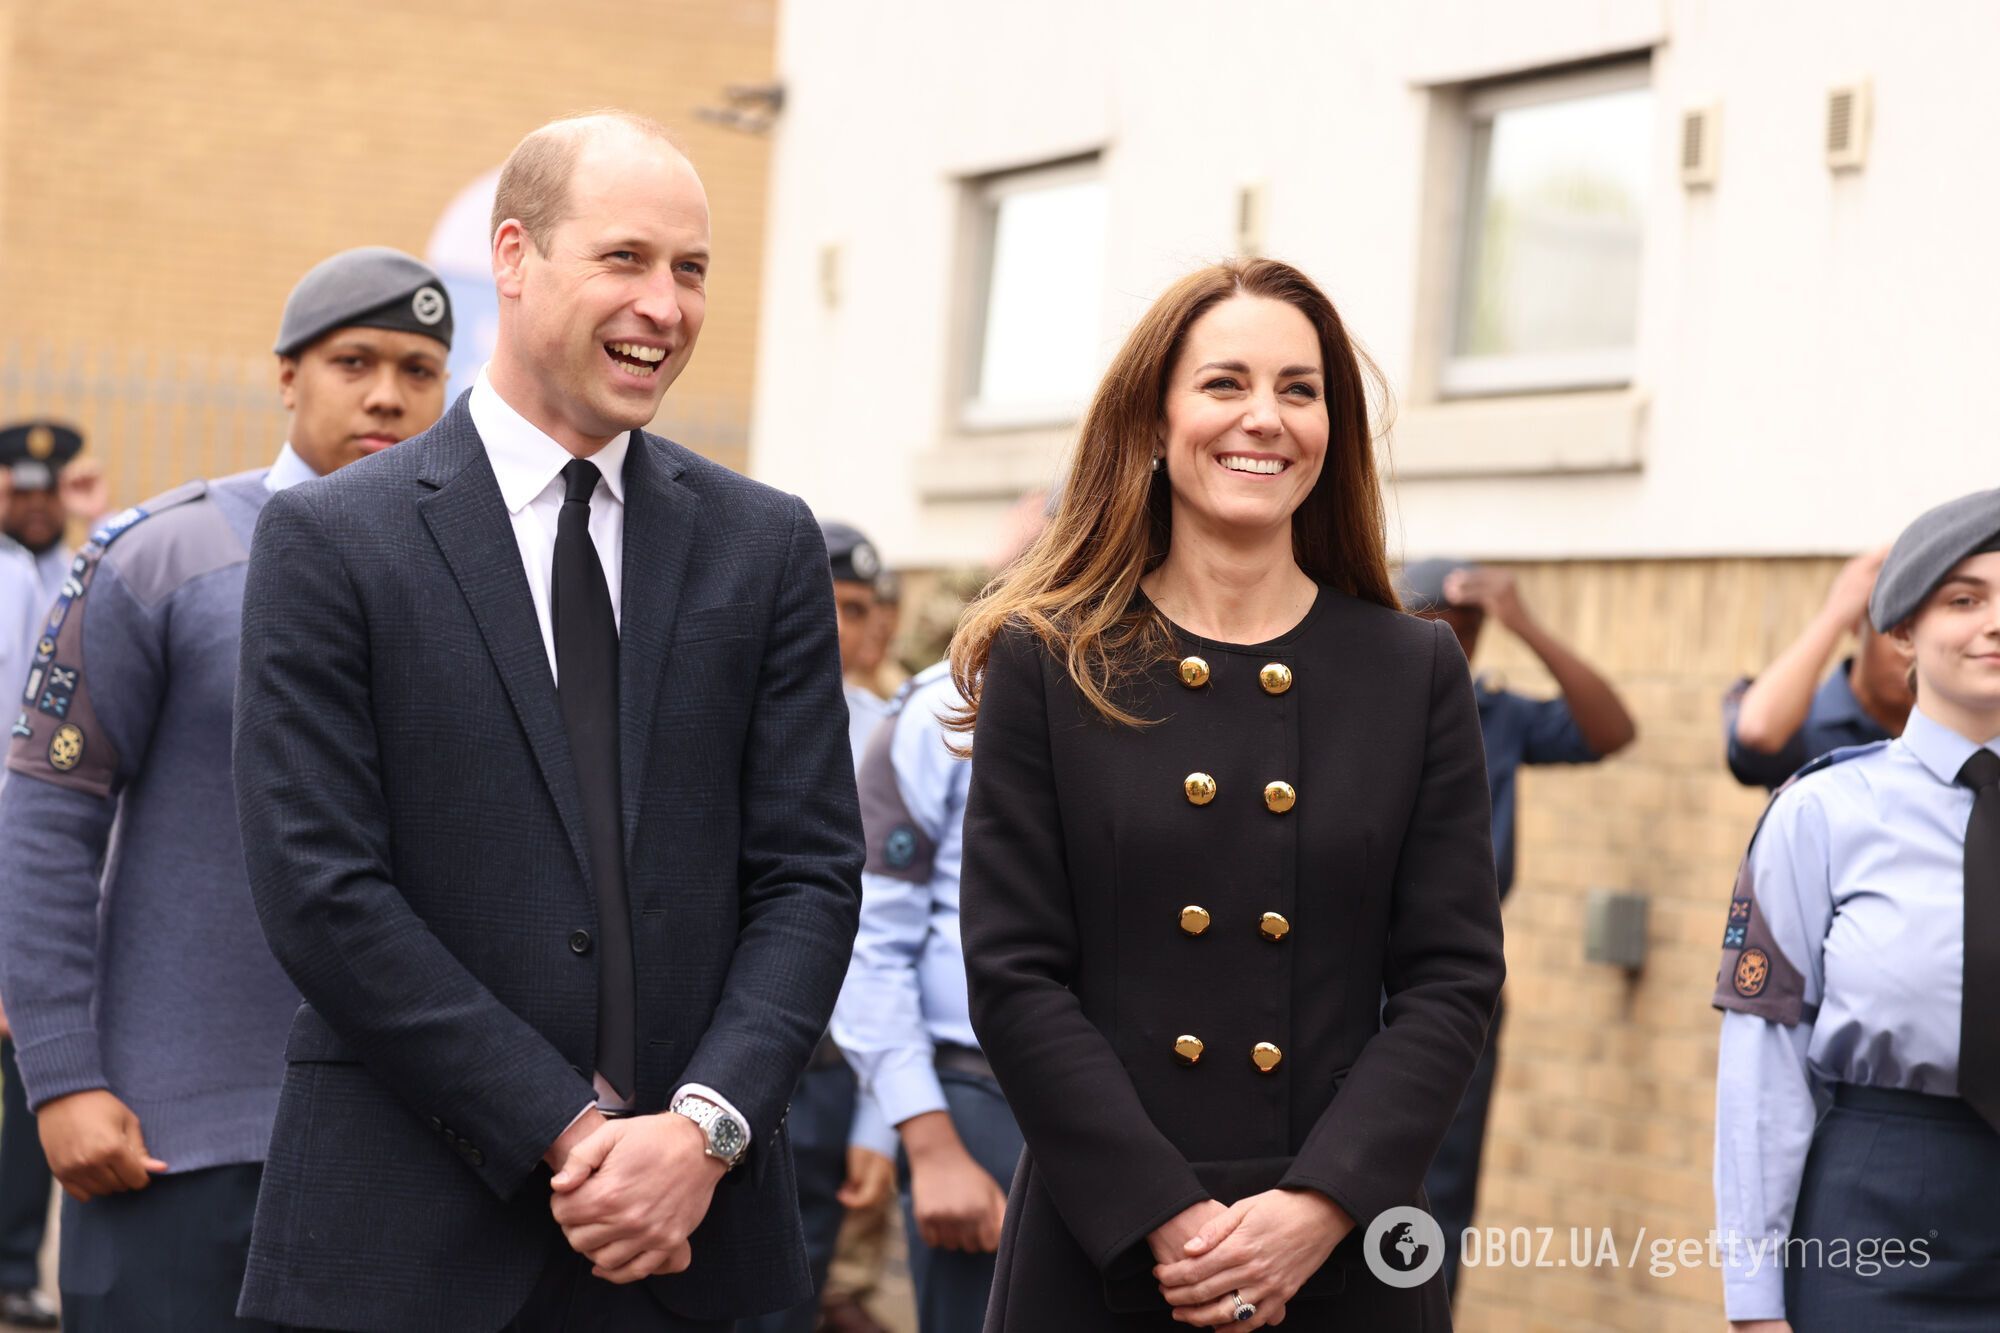 Кейт Миддлтон и принц Уильям вышли в свет после похорон